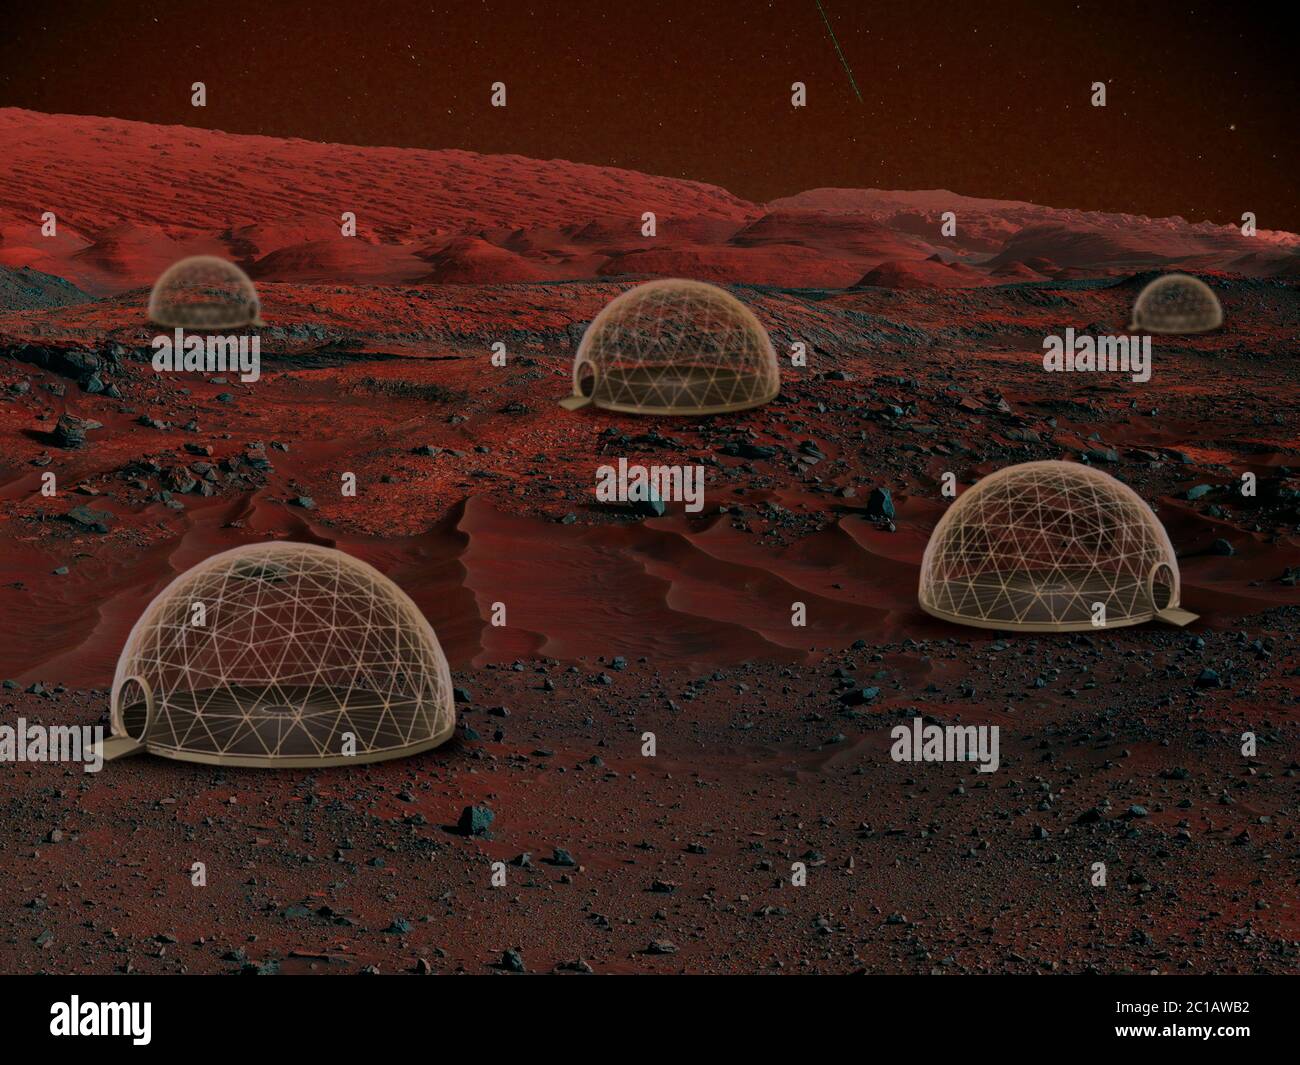 Immaginate che le persone vivano su Marte. Primo piano paesaggio di un pianeta abbandonato, bellezza della vita su Marte. Camere di ossigeno protettive, bolle per una vita confortevole. Esplorazione della vita in un nuovo spazio. Foto Stock